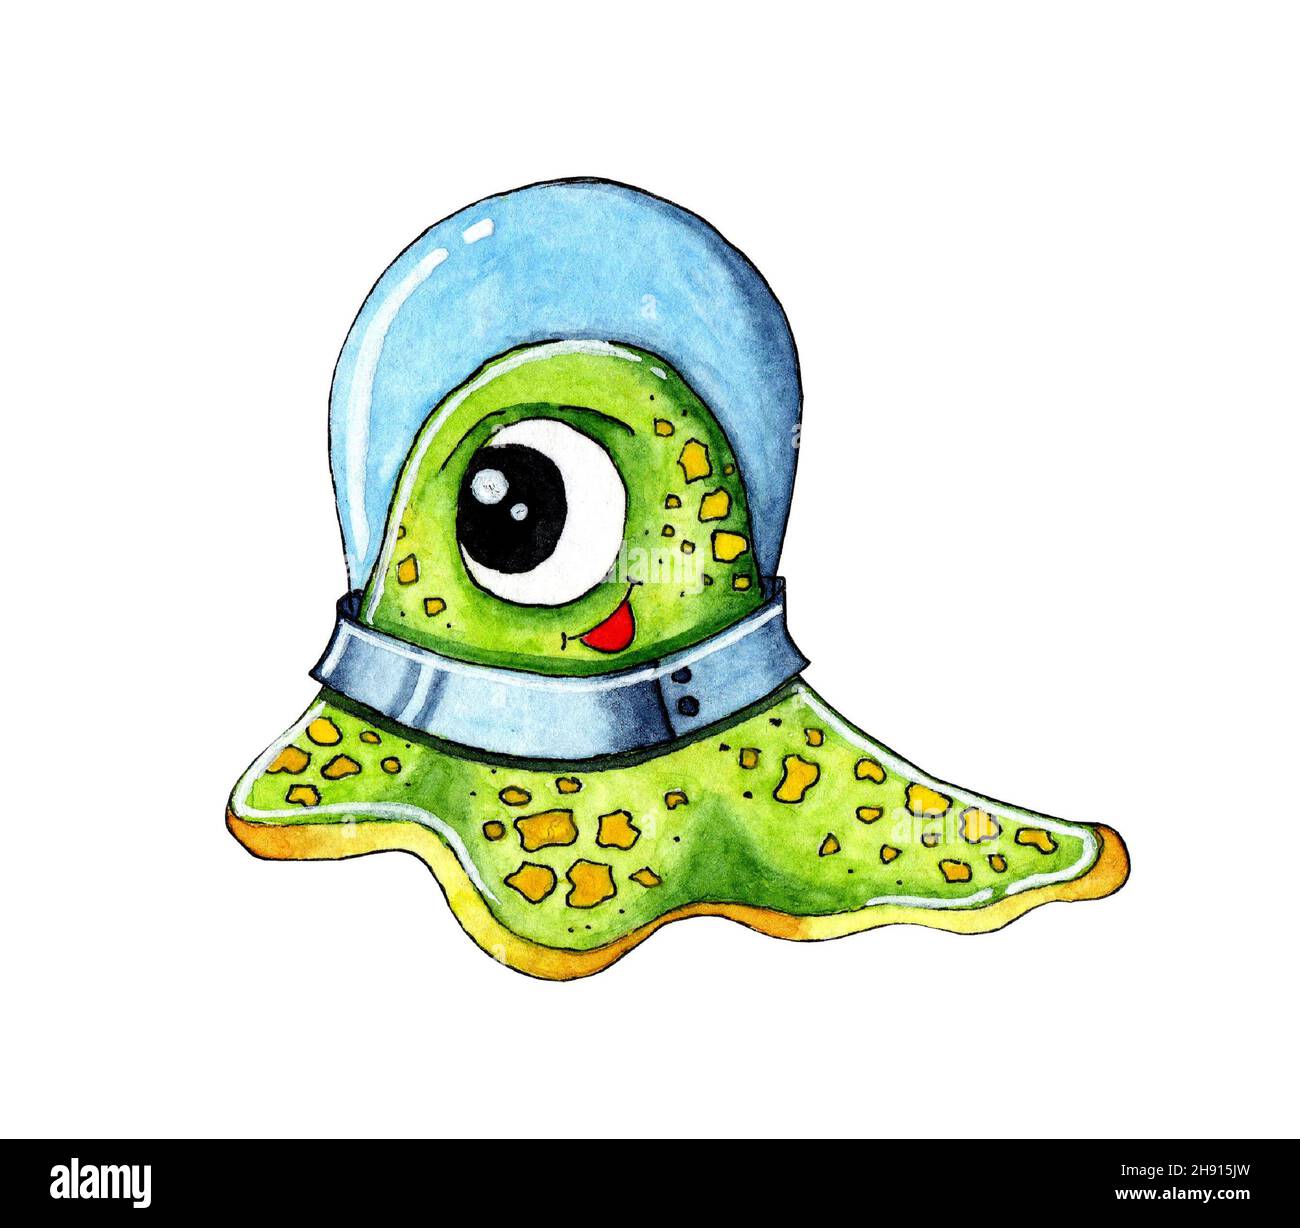 Acquerello illustrazione di un piccolo verde carino shapeless alieno in uno spazio. Immagine infantile di un alieno felice con un occhio grande e macchie gialle. È Foto Stock